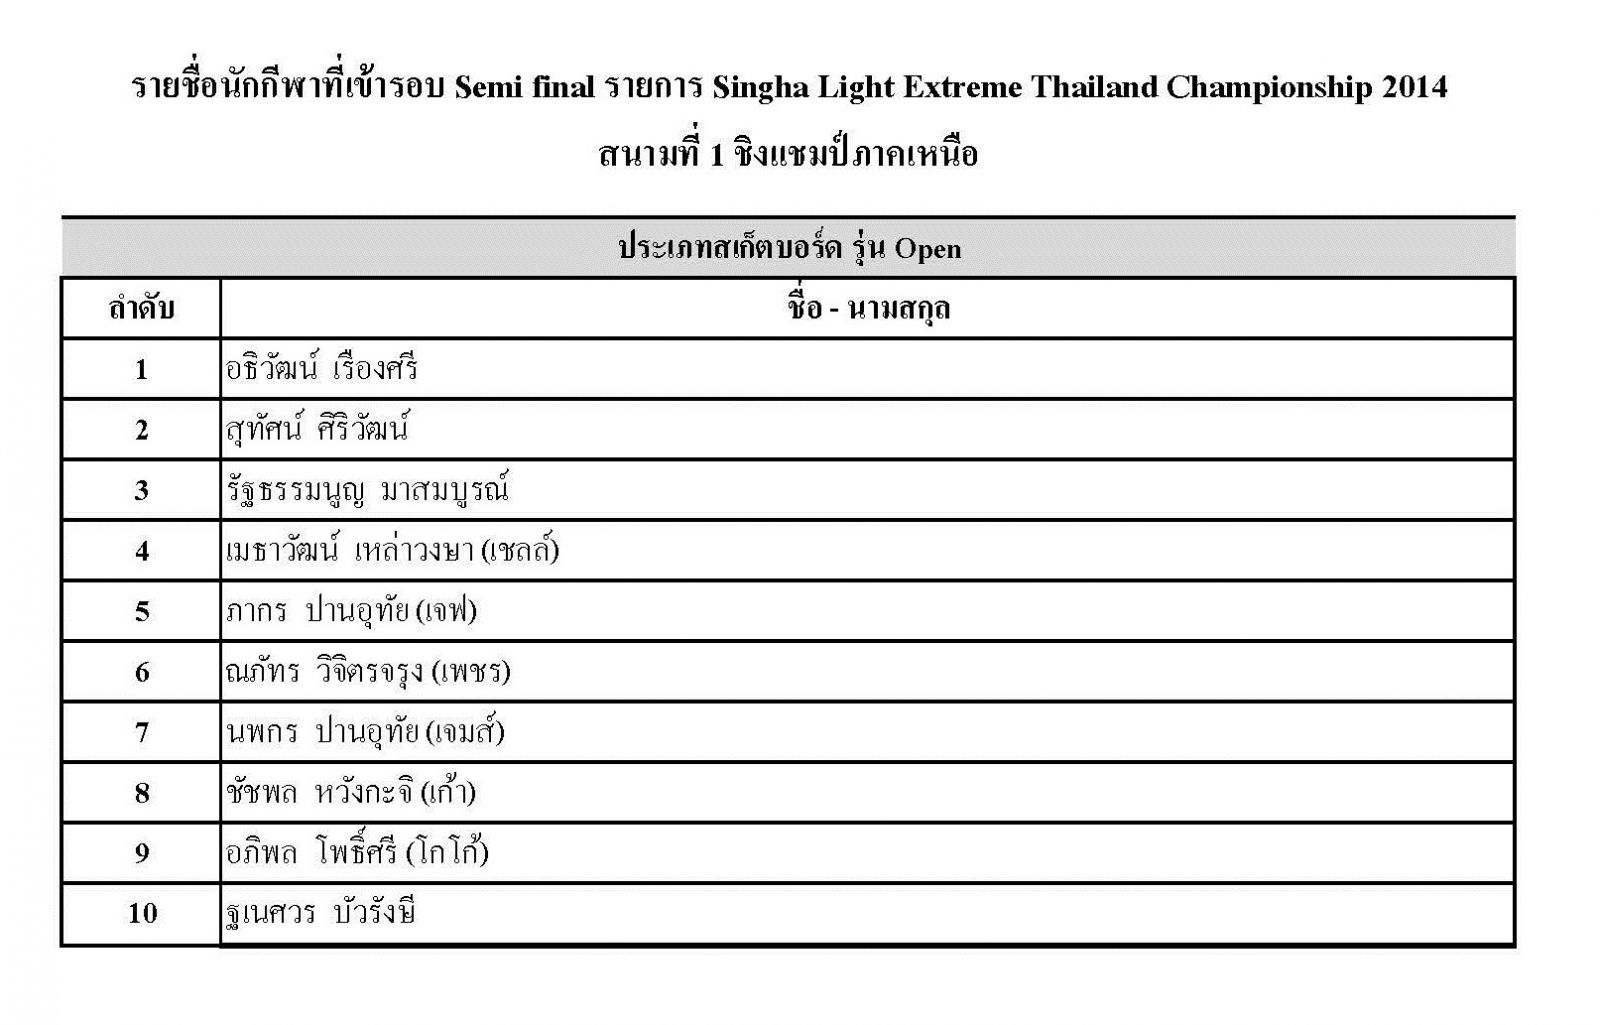 ประกาศรายชื่อนักกีฬา 4 ประเภท ที่ผ่านเข้ารอบ Semi Final สำหรับการแข่งขัน เอ็กซ์ตรีมชิงแชมป์ประเทศไทย